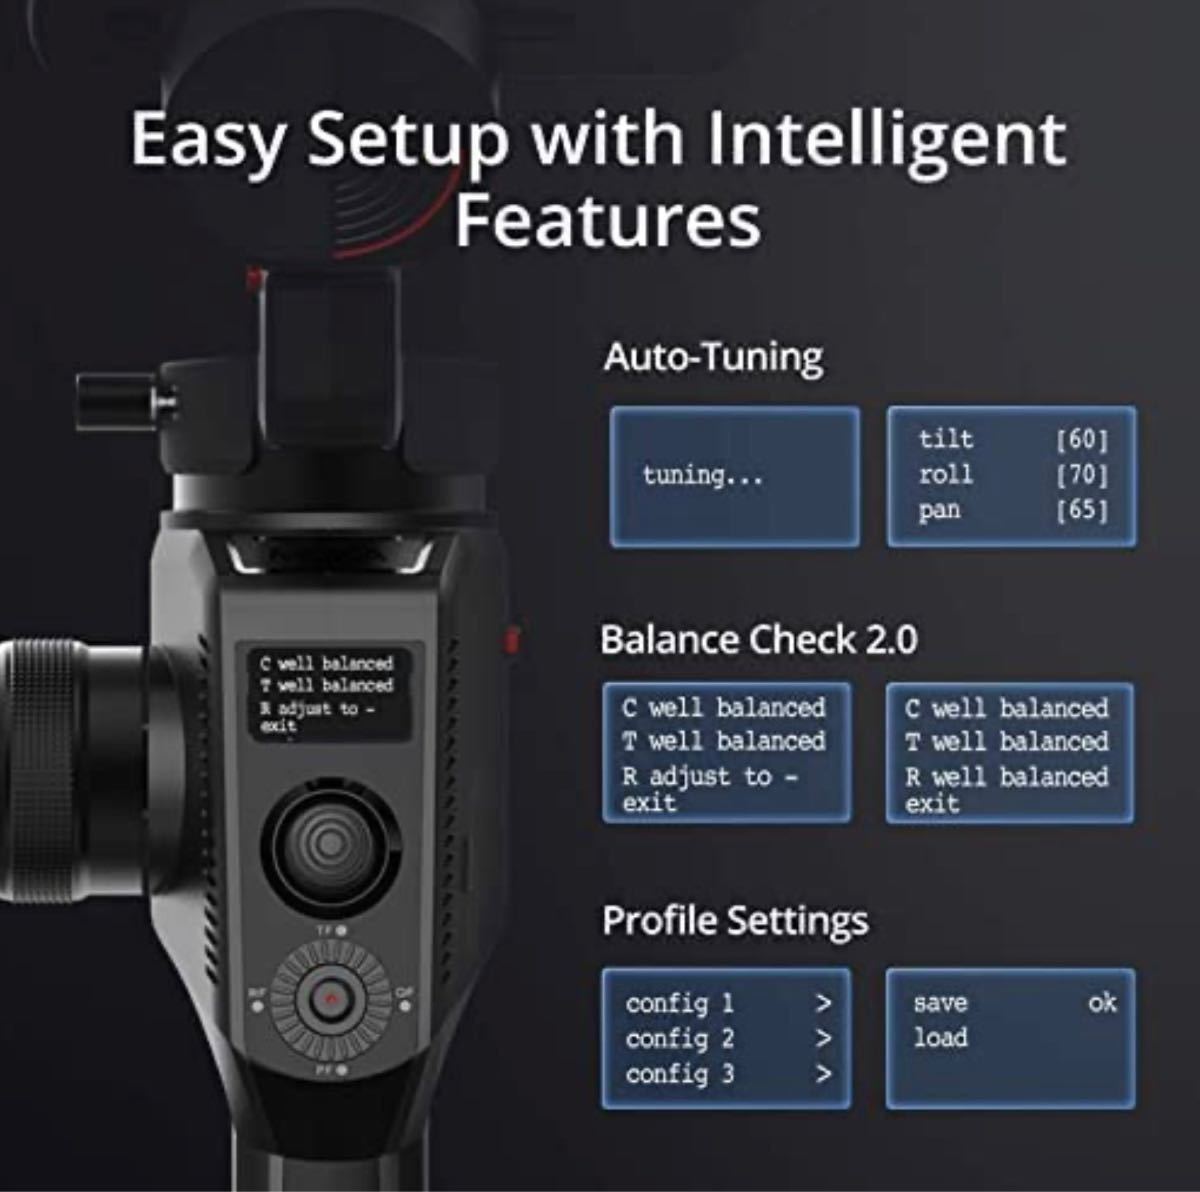 MOZA AirCross 2 Pro Kit カメラスタビライザー 3軸ジンバル iFocusMフォーカスモーター付き ジンバル